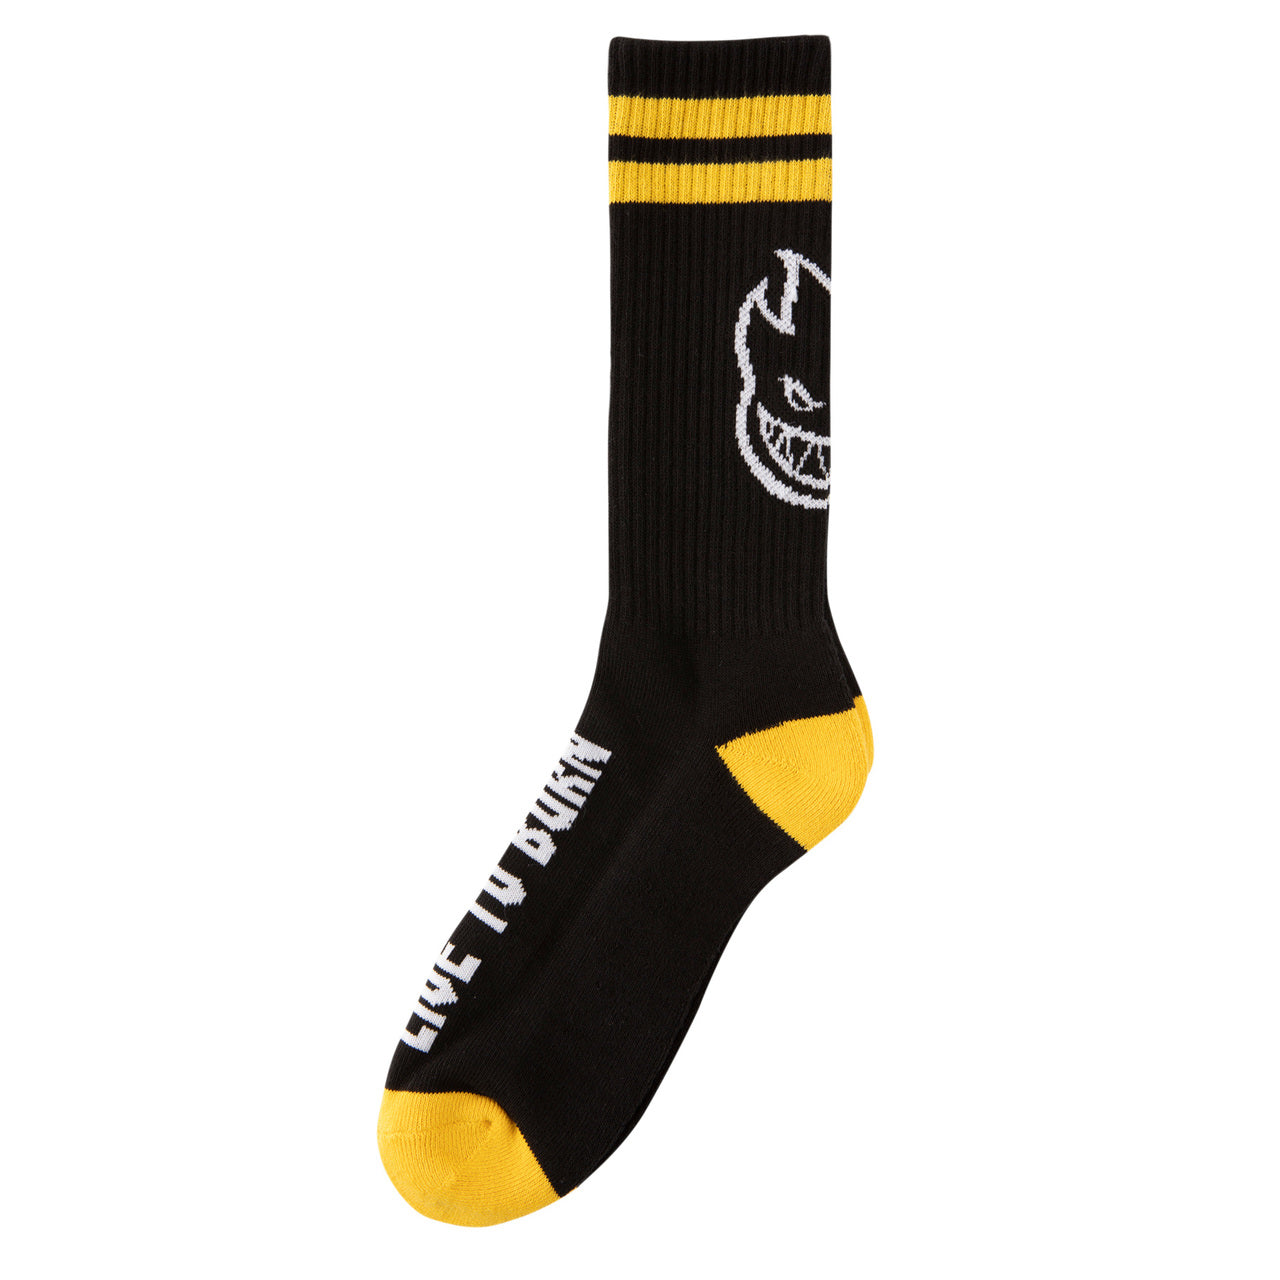 Black/Yellow/White Spitfire Skateboard Socks